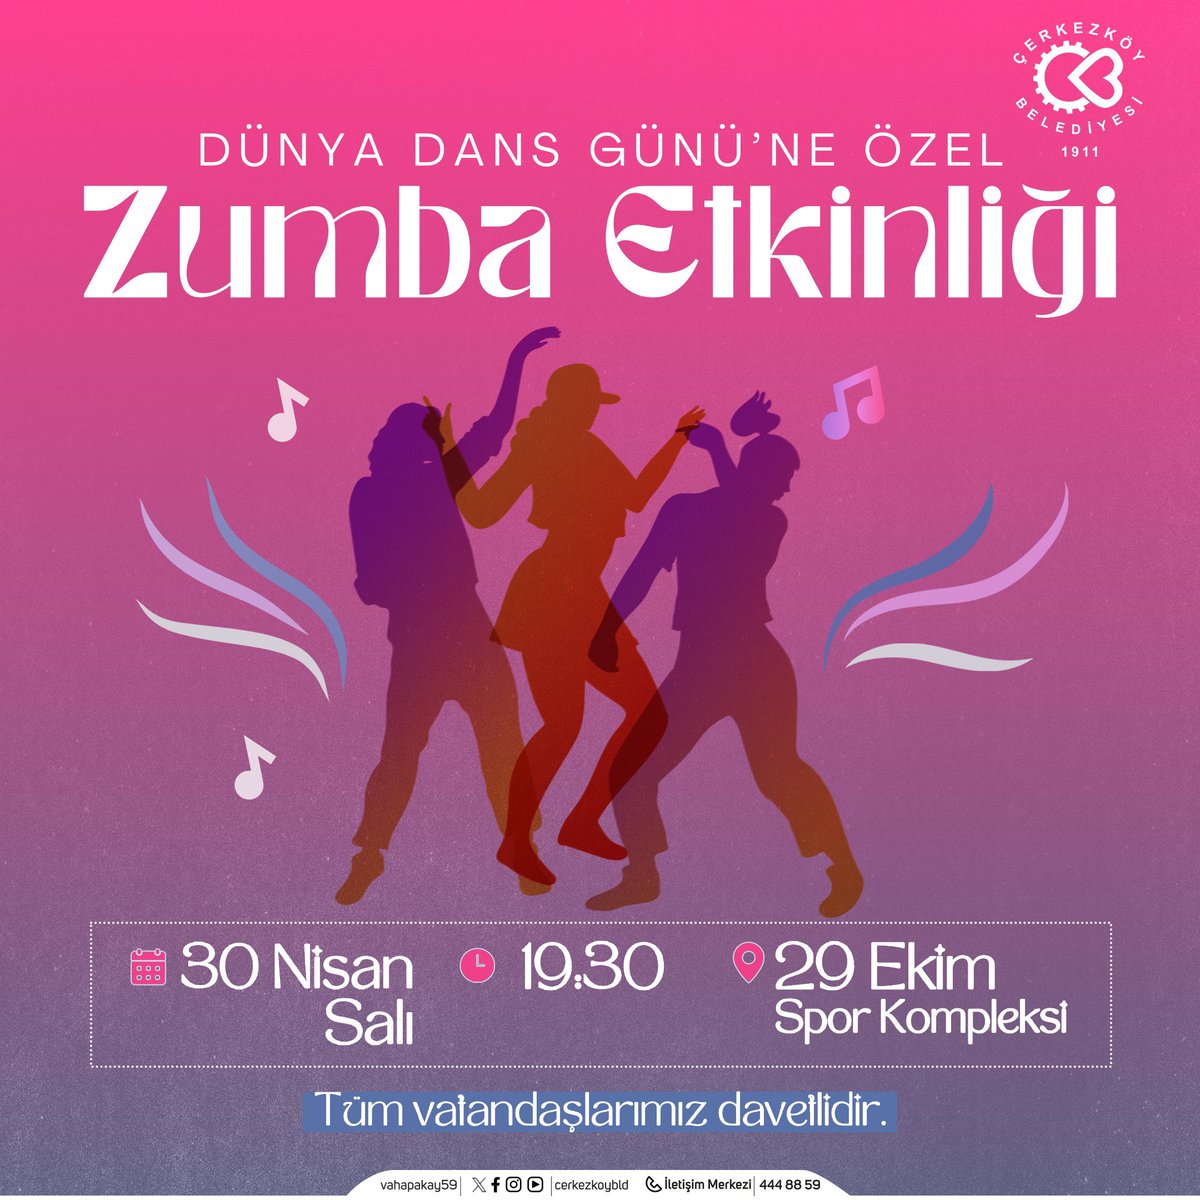 O zaman dans!🕺💃🏻 30 Nisan Salı günü 19:30’da Dünya Dans Günü’nü Zumba yaparak kutlayacağız. 🎉 Her yaştan tüm hemşehrilerimizi 29 Ekim Spor Kompleksi’mize bekliyoruz.🌻